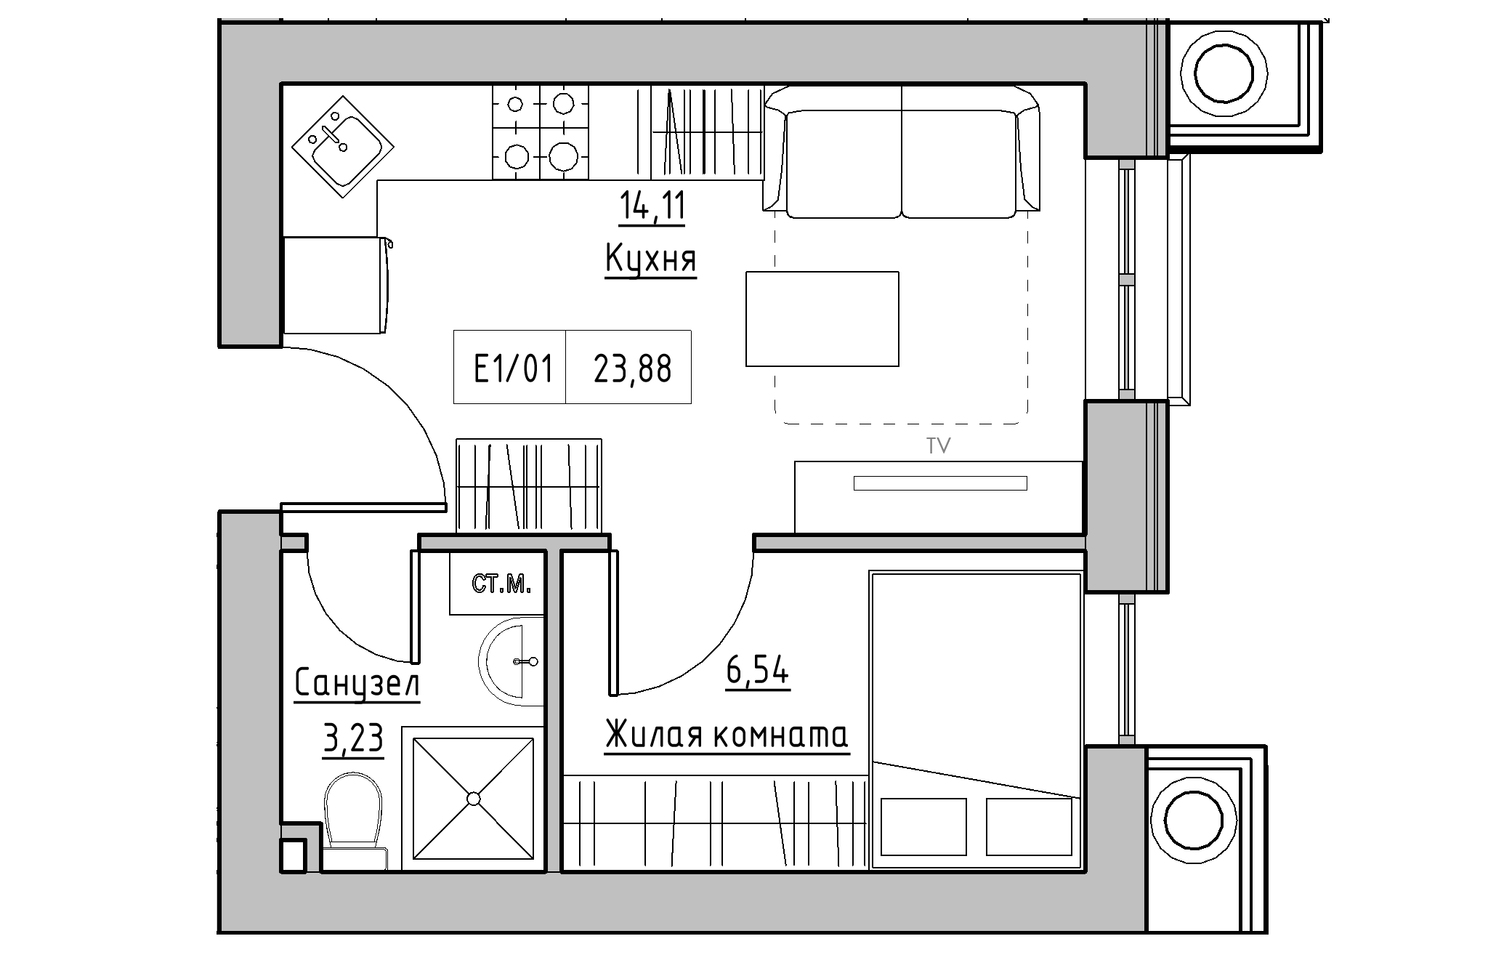 Планування 1-к квартира площею 23.88м2, KS-010-02/0011.